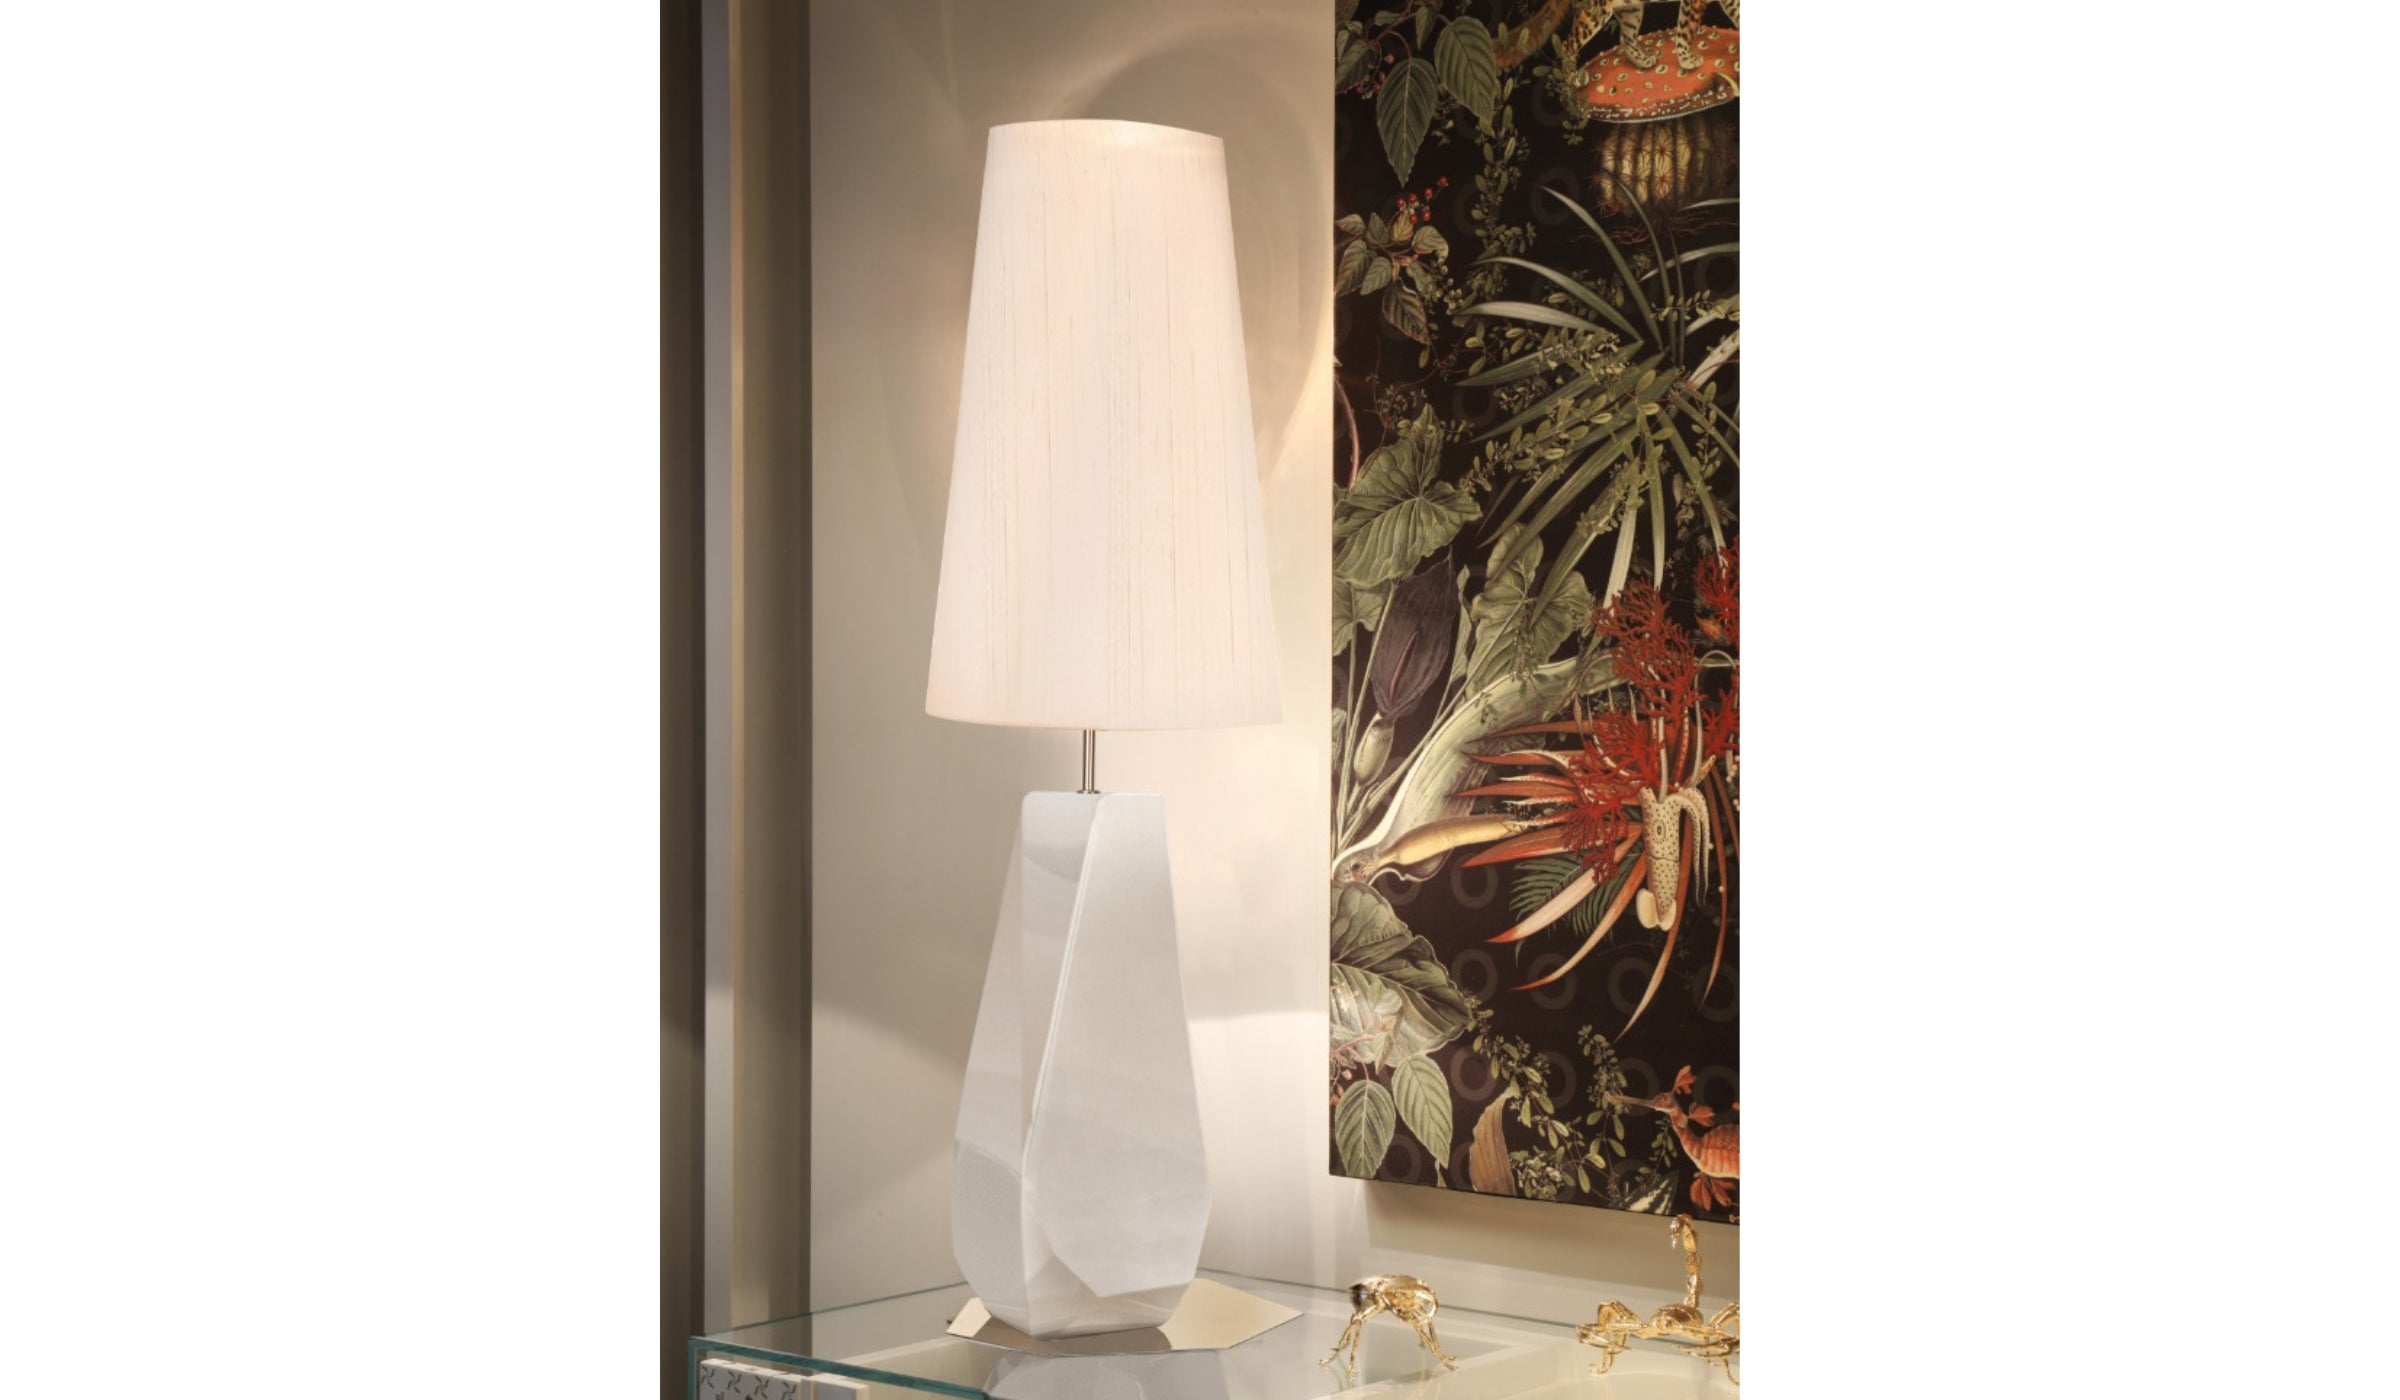 Feel Big - Lampe de table blanche, éclairage design en fibre de verre, feuilles d'argent, acier inoxydable et soie